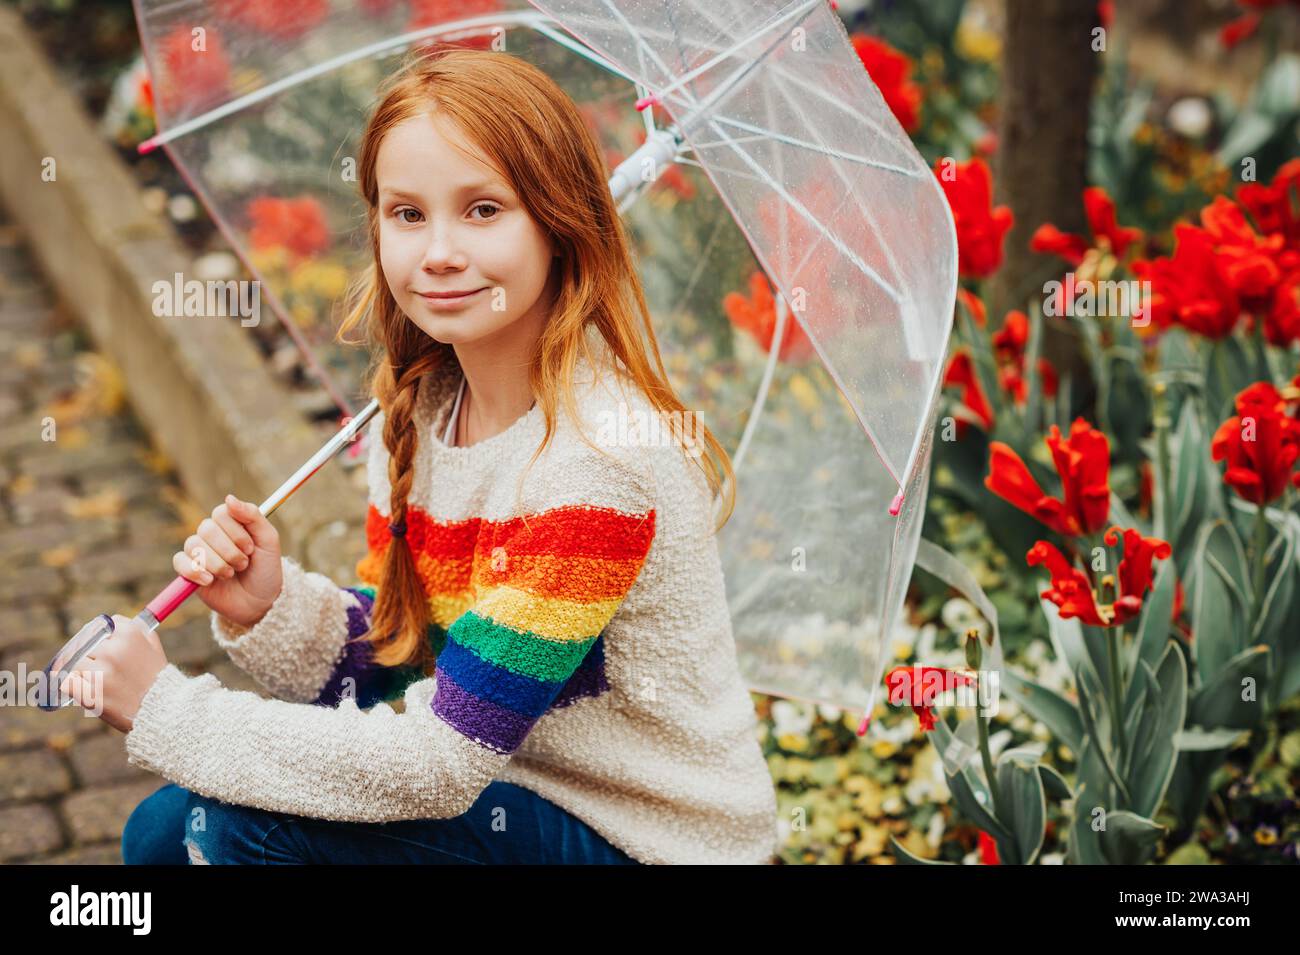 Retrato al aire libre de la primavera de la muchacha adorable pelirroja que sostiene el paraguas transparente, usando el jersey del arco iris, niño que juega afuera en un día lluvioso, f Foto de stock